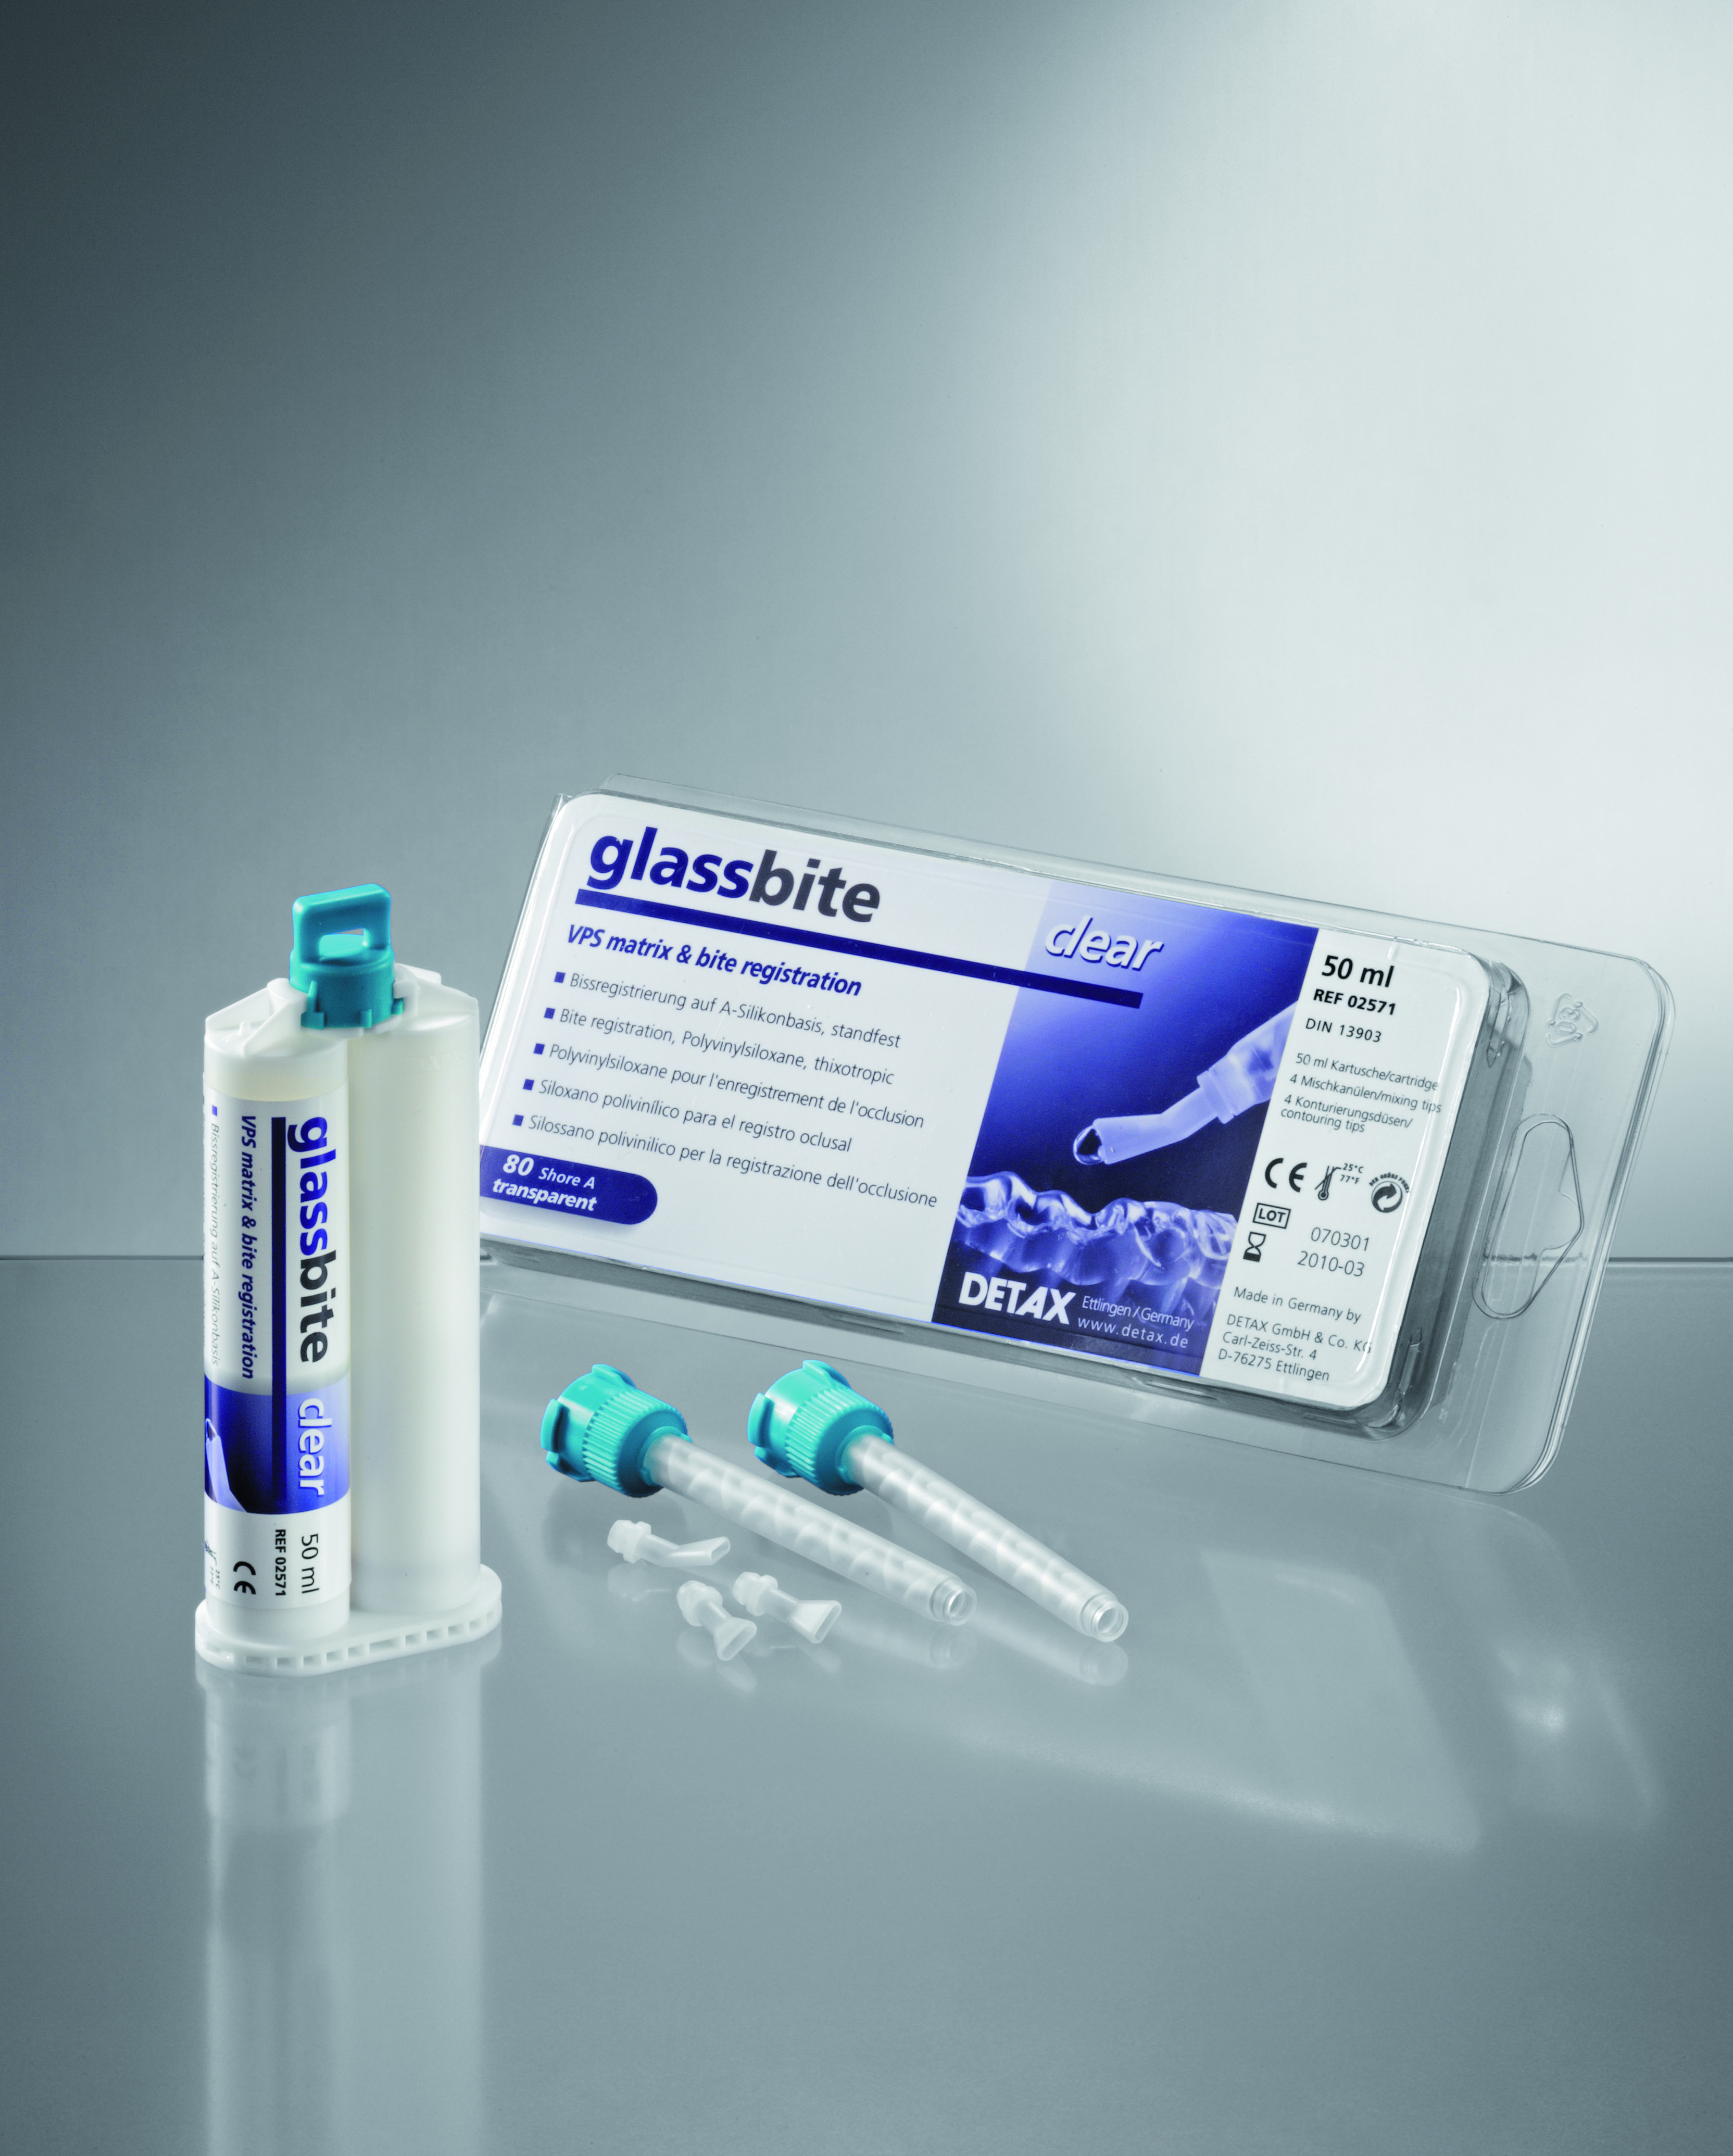 Glassbite - материал для регистрации прикуса на основе А-силикона средней вязкости